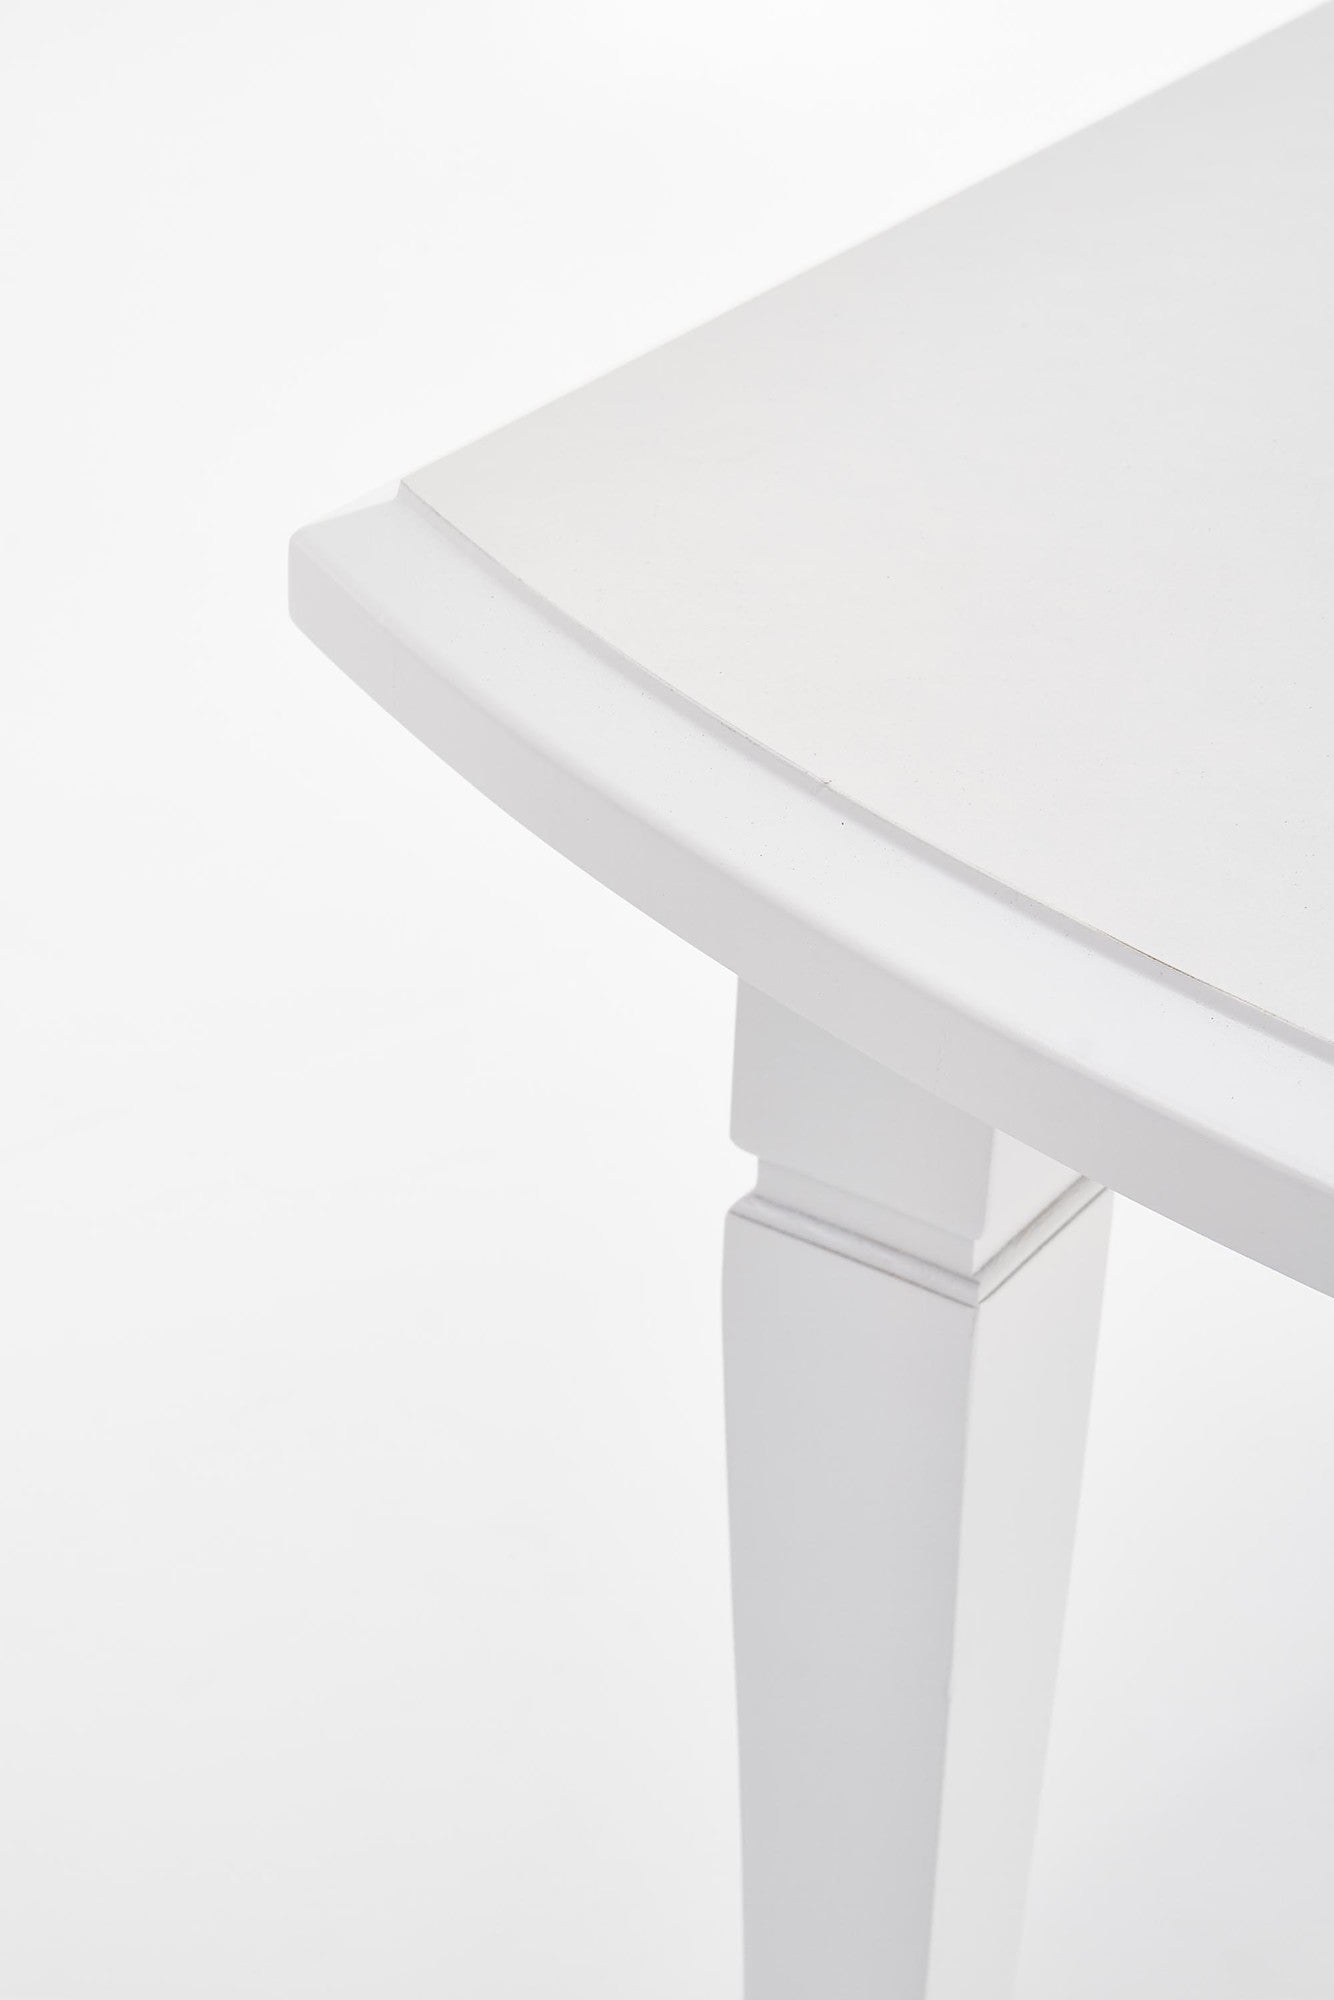 Finch asztal (fehér), 160-240 x 90 cm - Marco Mobili Bútoráruház - Étkezőasztal